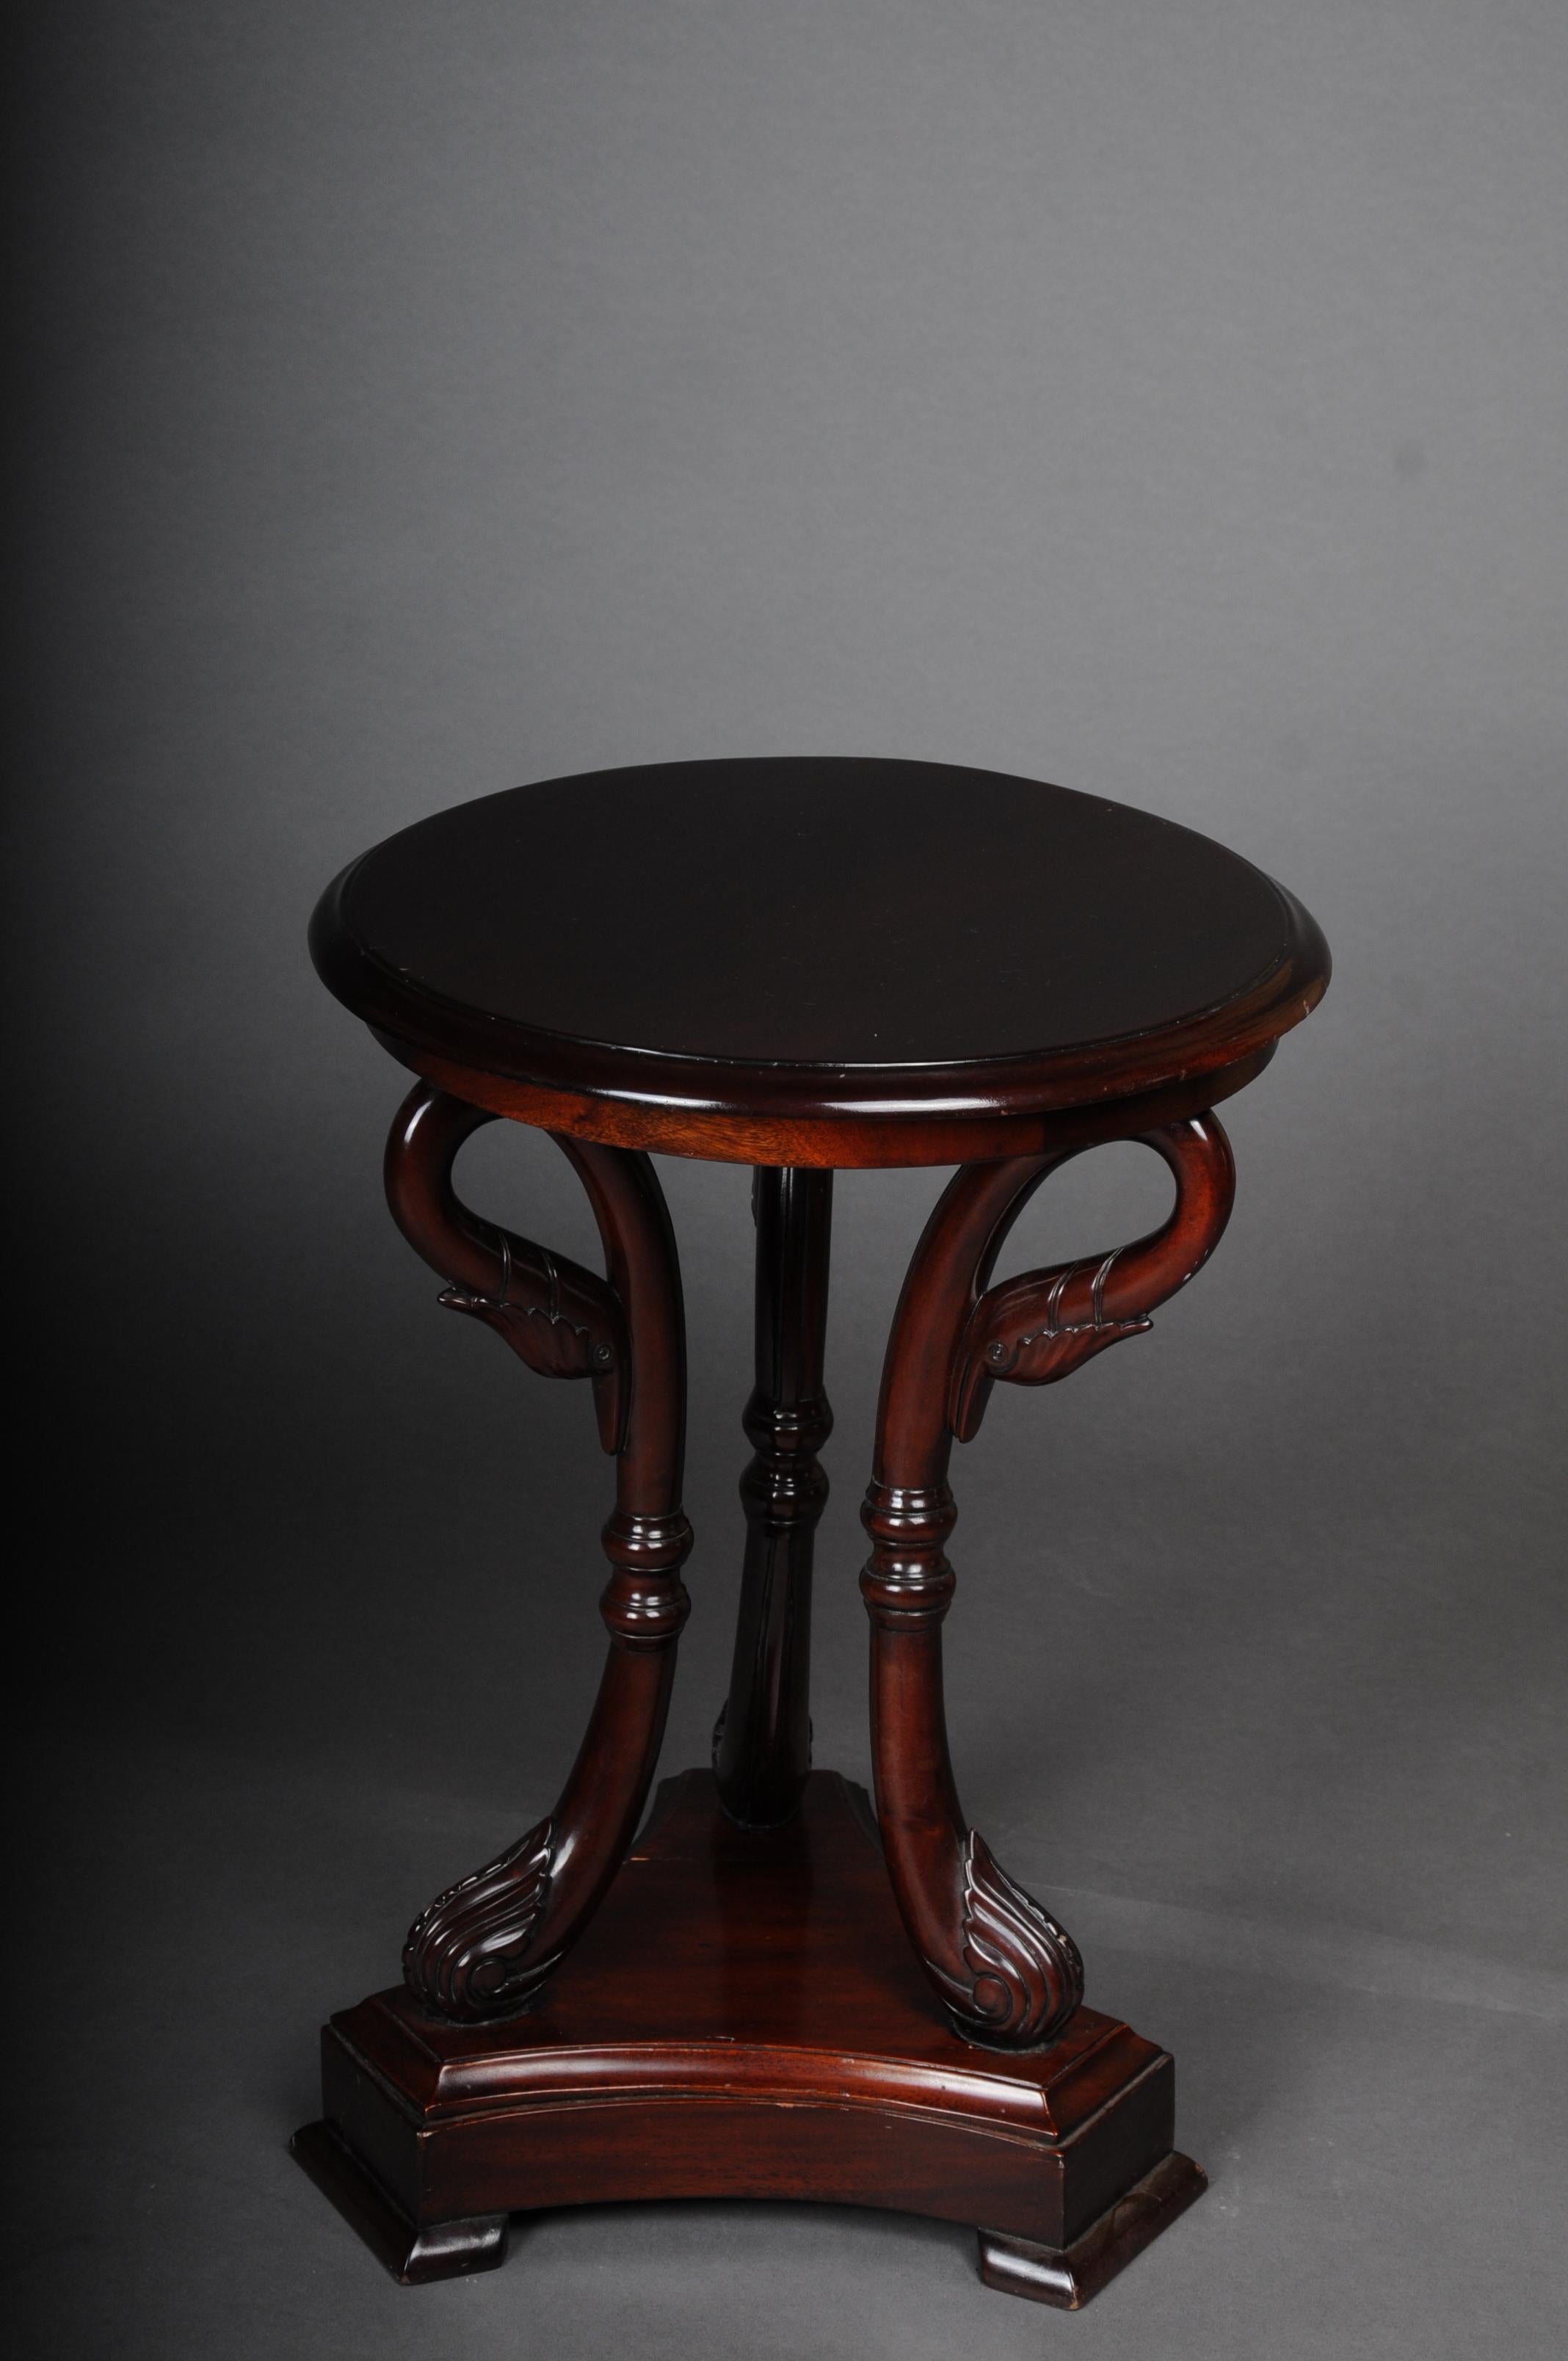 Beistelltisch Schwan, Mahagoni, 20. Jahrhundert

Runde profilierte Tischplatte.
Massivholz mit langen Schwanenbeinen auf einem geformten quadratischen Sockel.

(G-96).